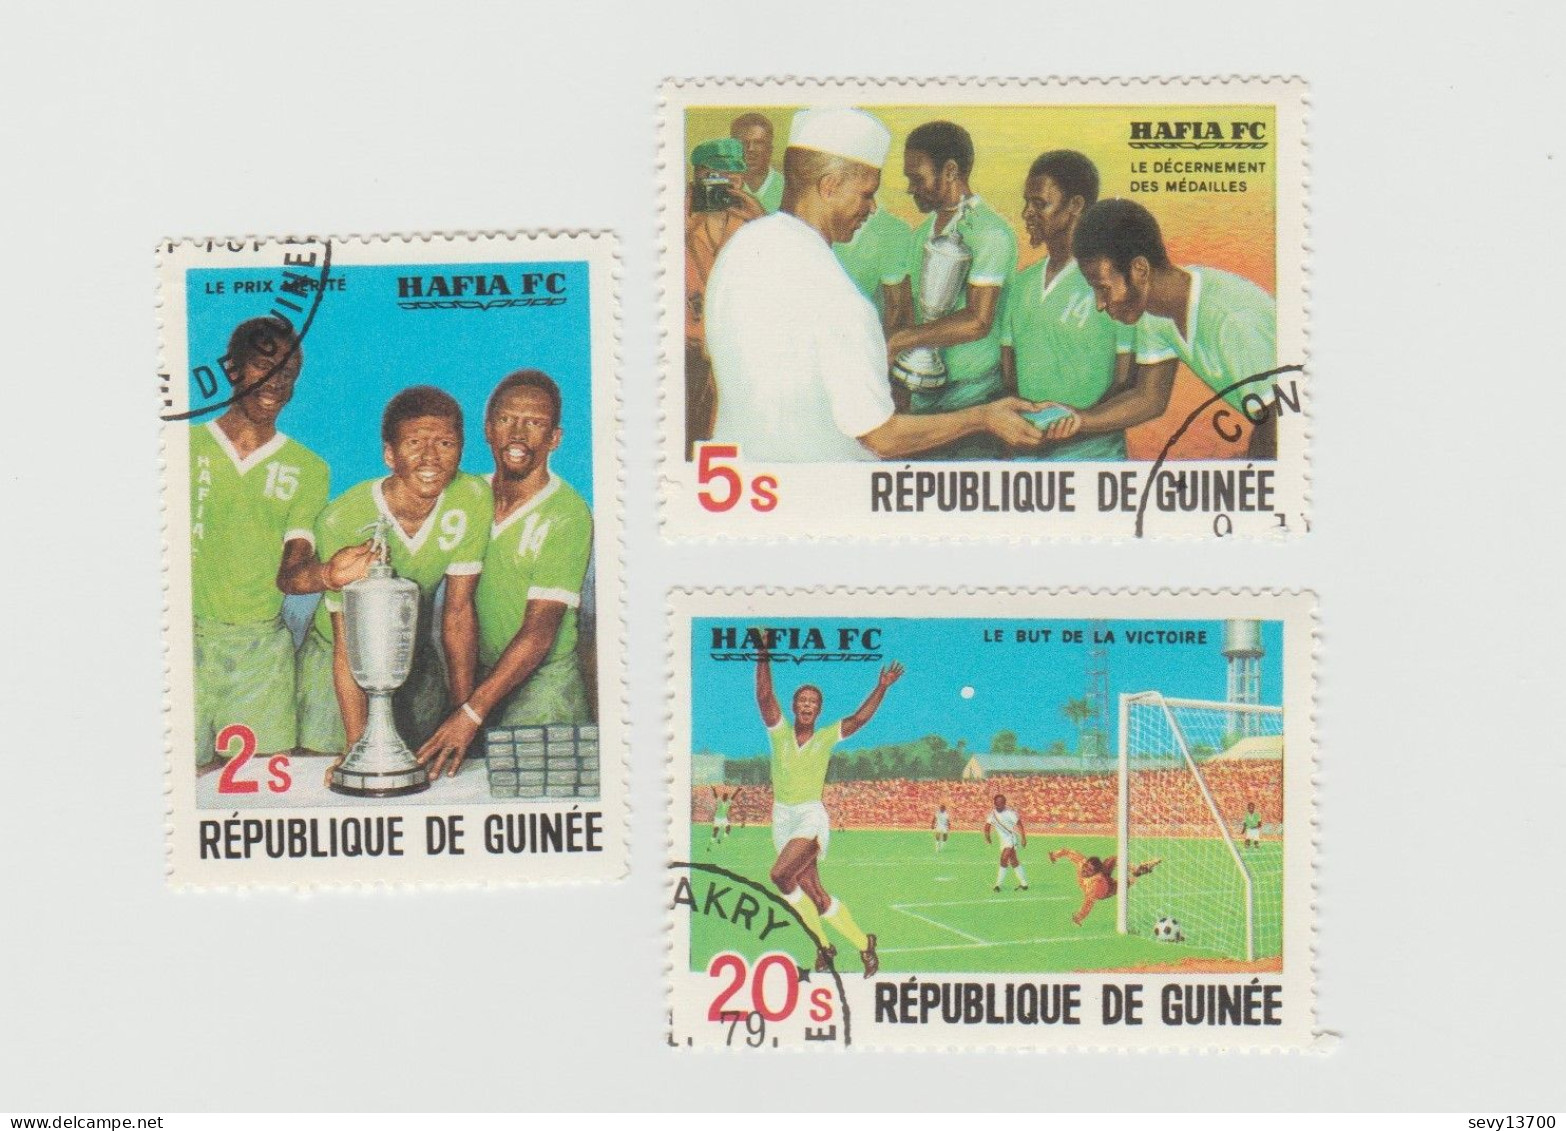 République de Guinée Lot 47 timbres Traditions Unicef Croix Rouge Foot Ball